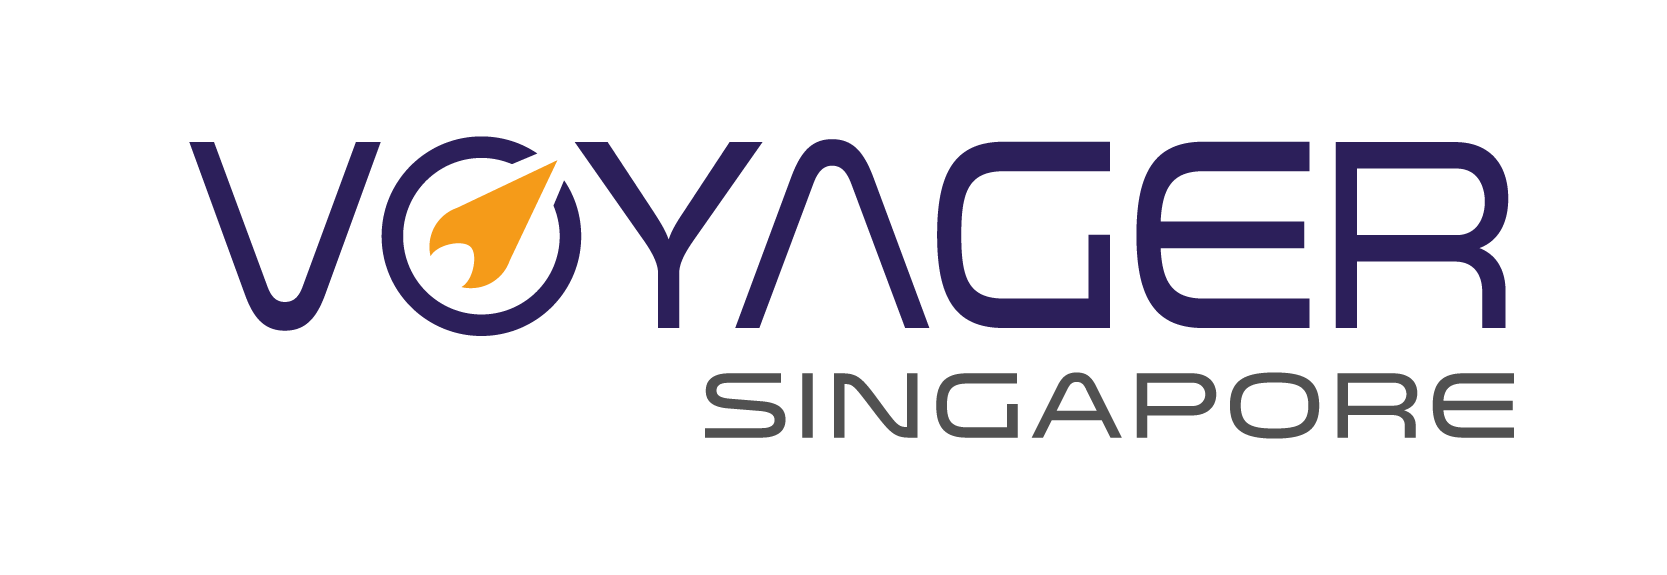 Voyager Singapore ecommerce